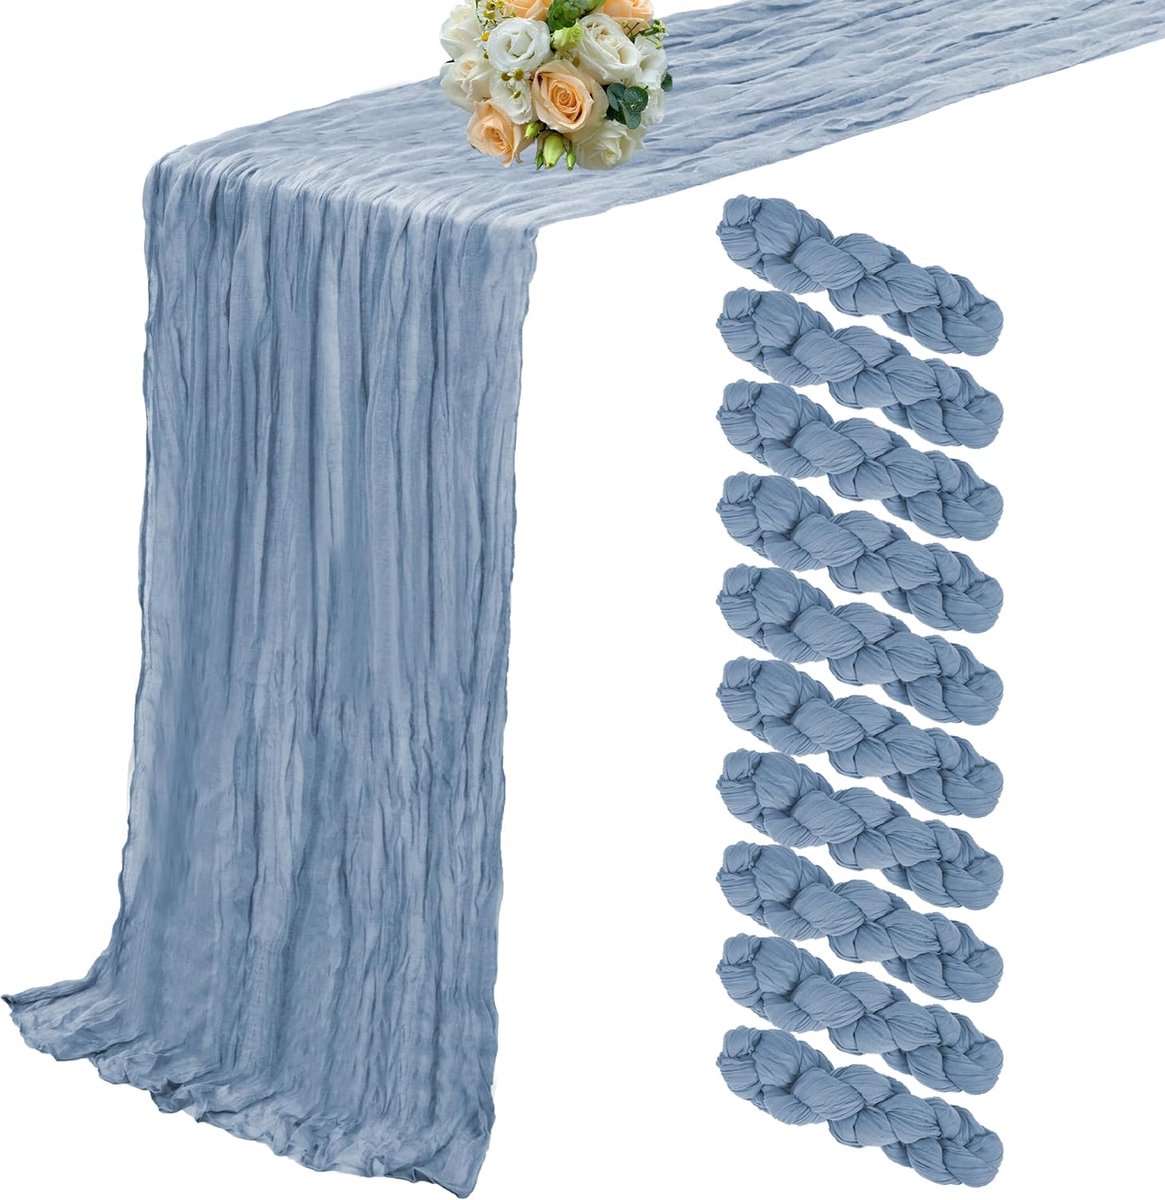 10 stuks kaasdoeken, stoffig blauw, 90 x 300 cm, boho-tuintafelkleden, lange kaastafelkleden voor feest, banket, bruiloft, verjaardag, tafeldecoratie